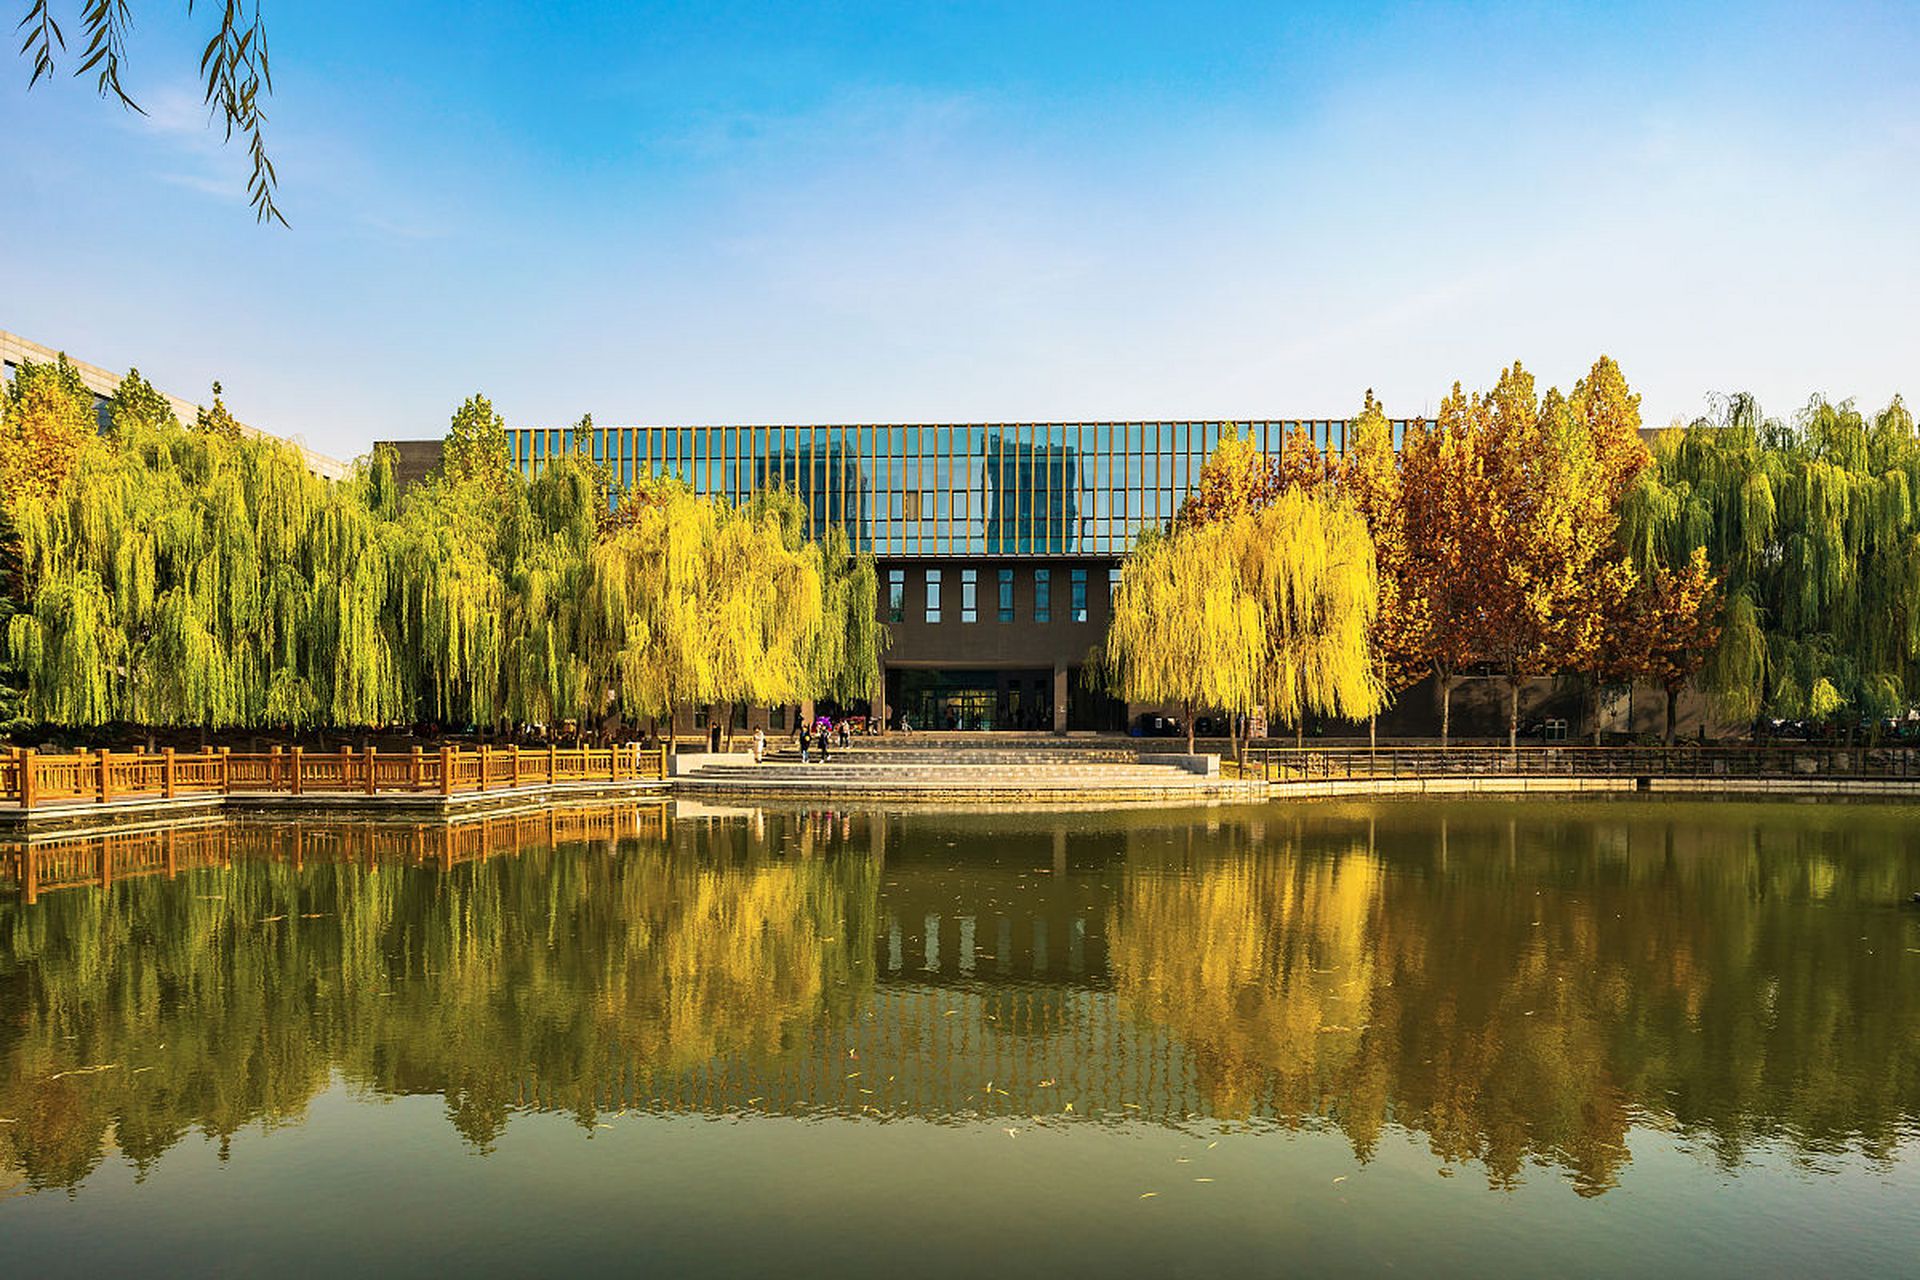 学术声誉:河北师范大学在中国教育界享有良好声誉,具有较强的教学